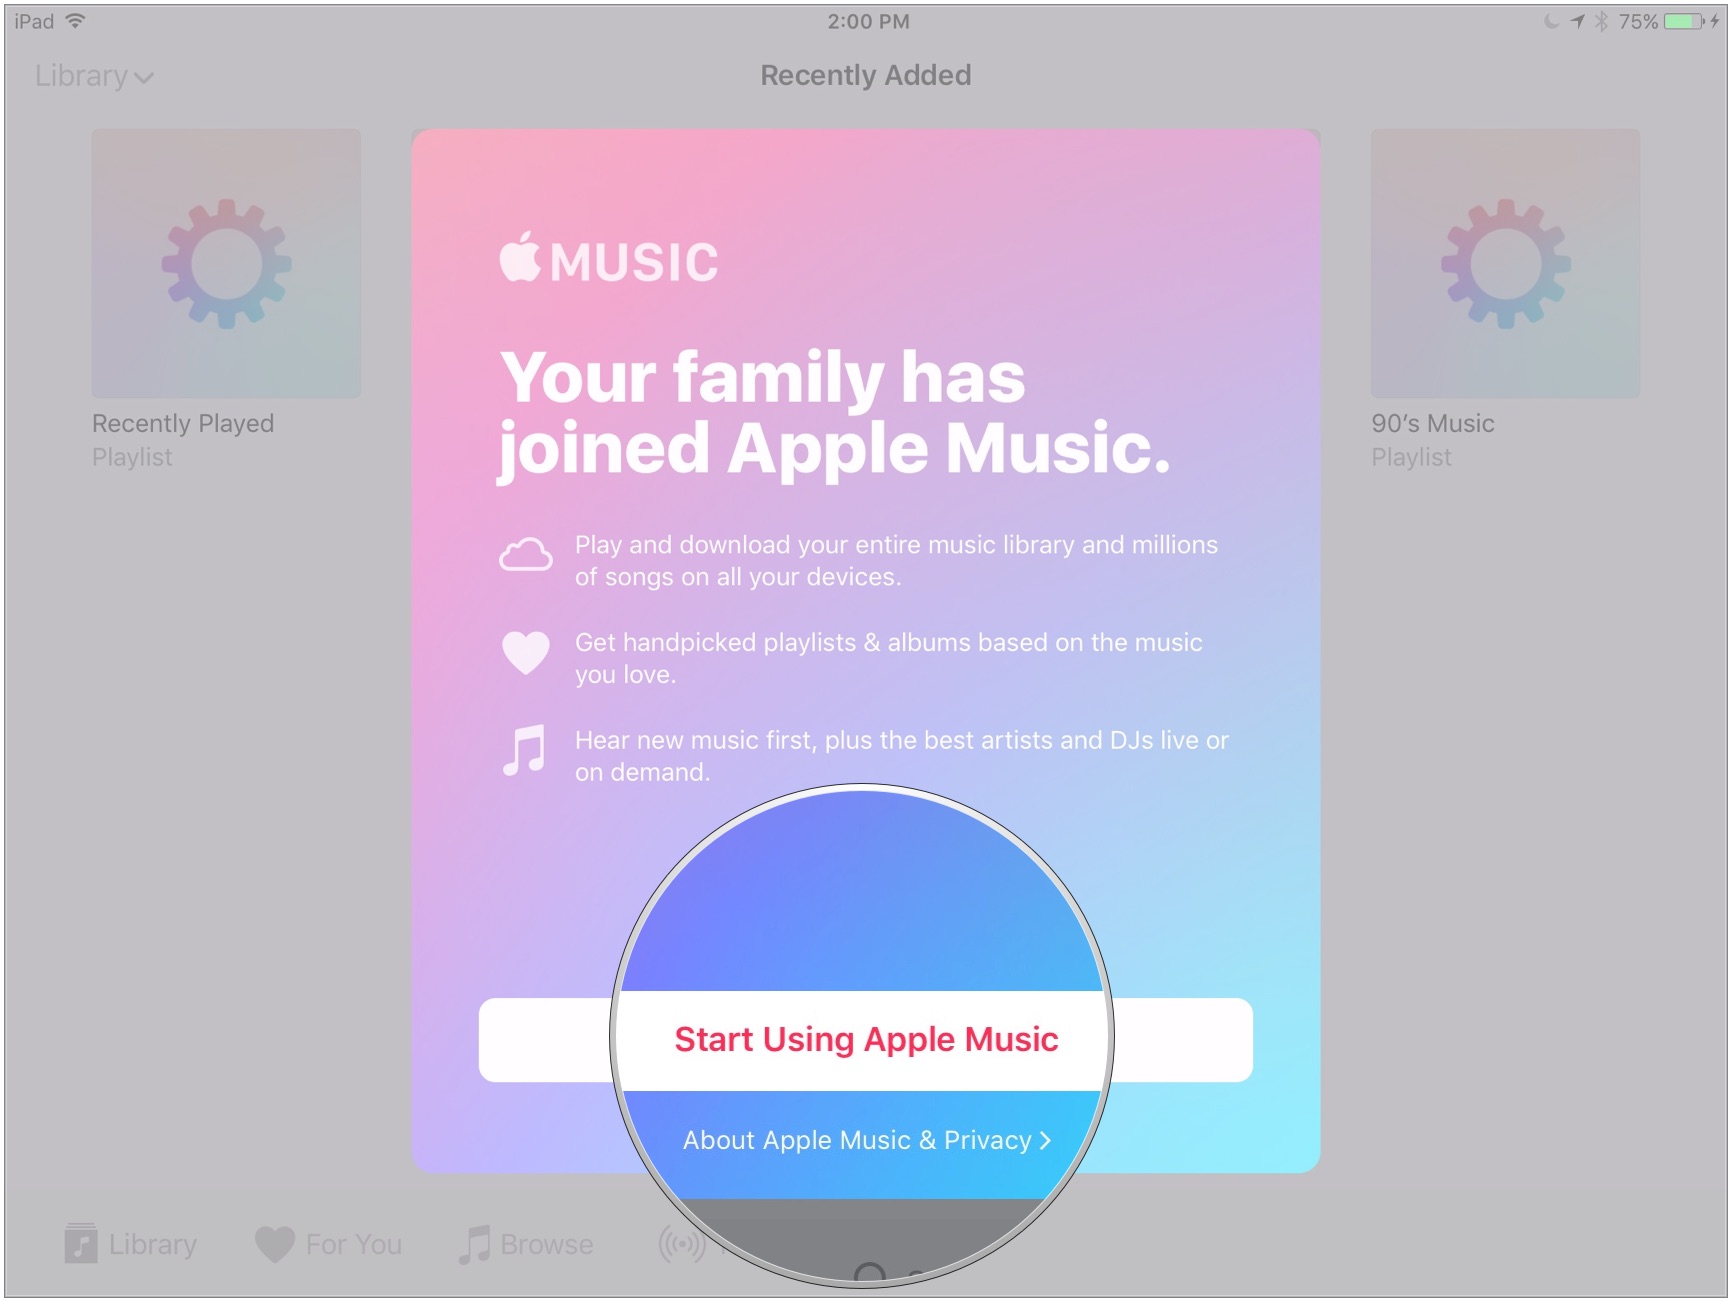 Нажмите Начать использование Apple Music